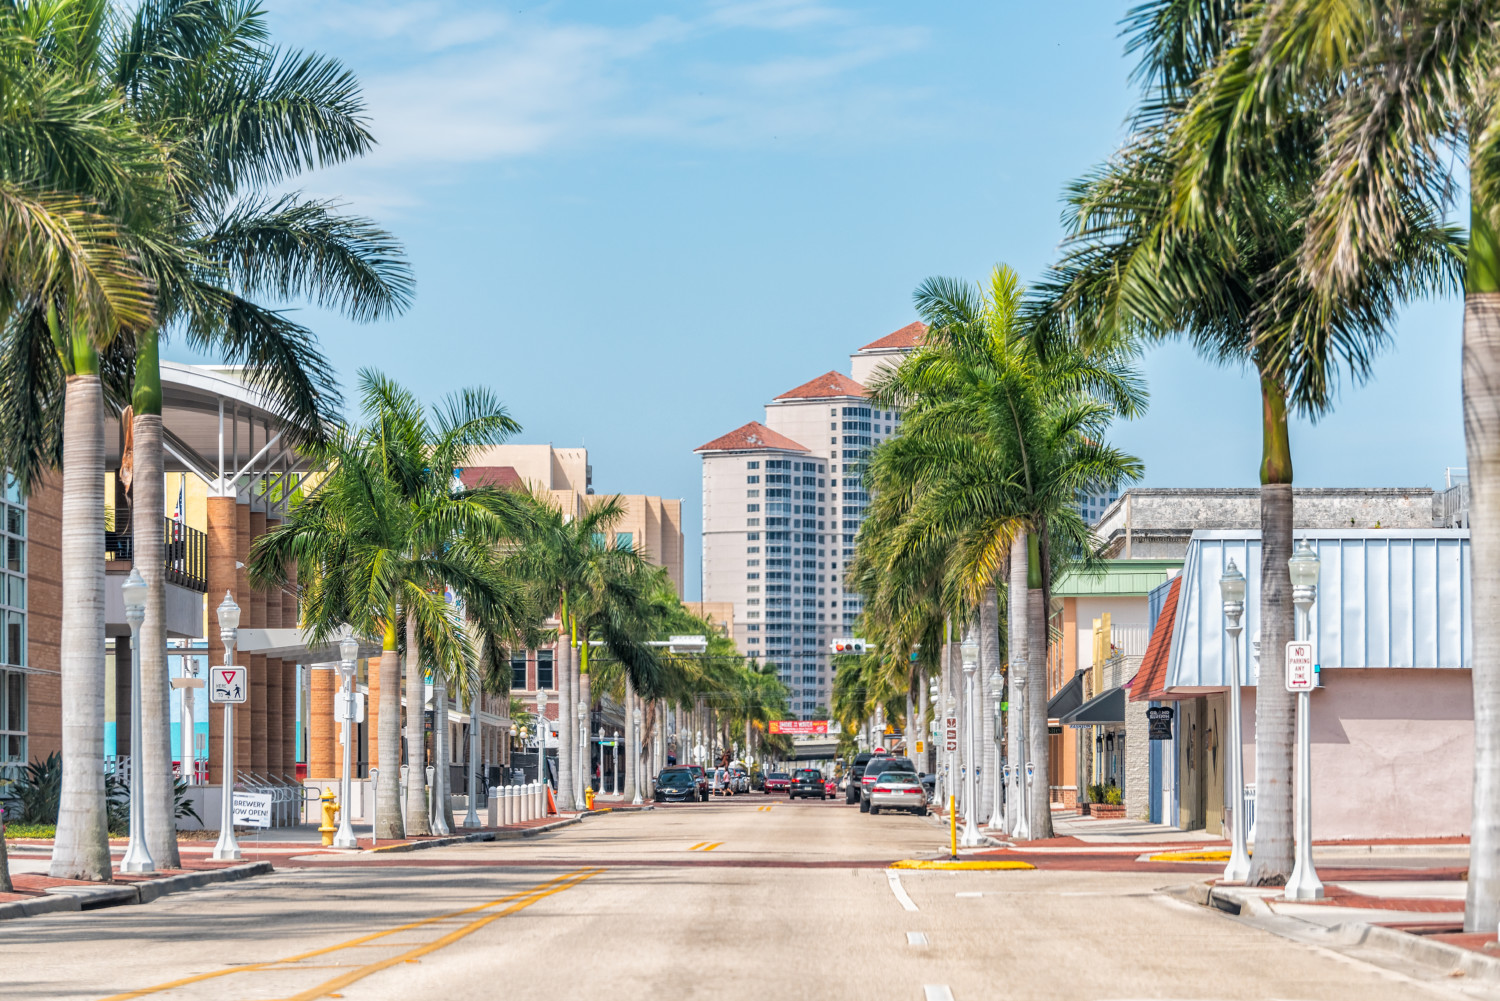 FASTEST GROWING CITIES IN FLORIDA Top Ten Picks